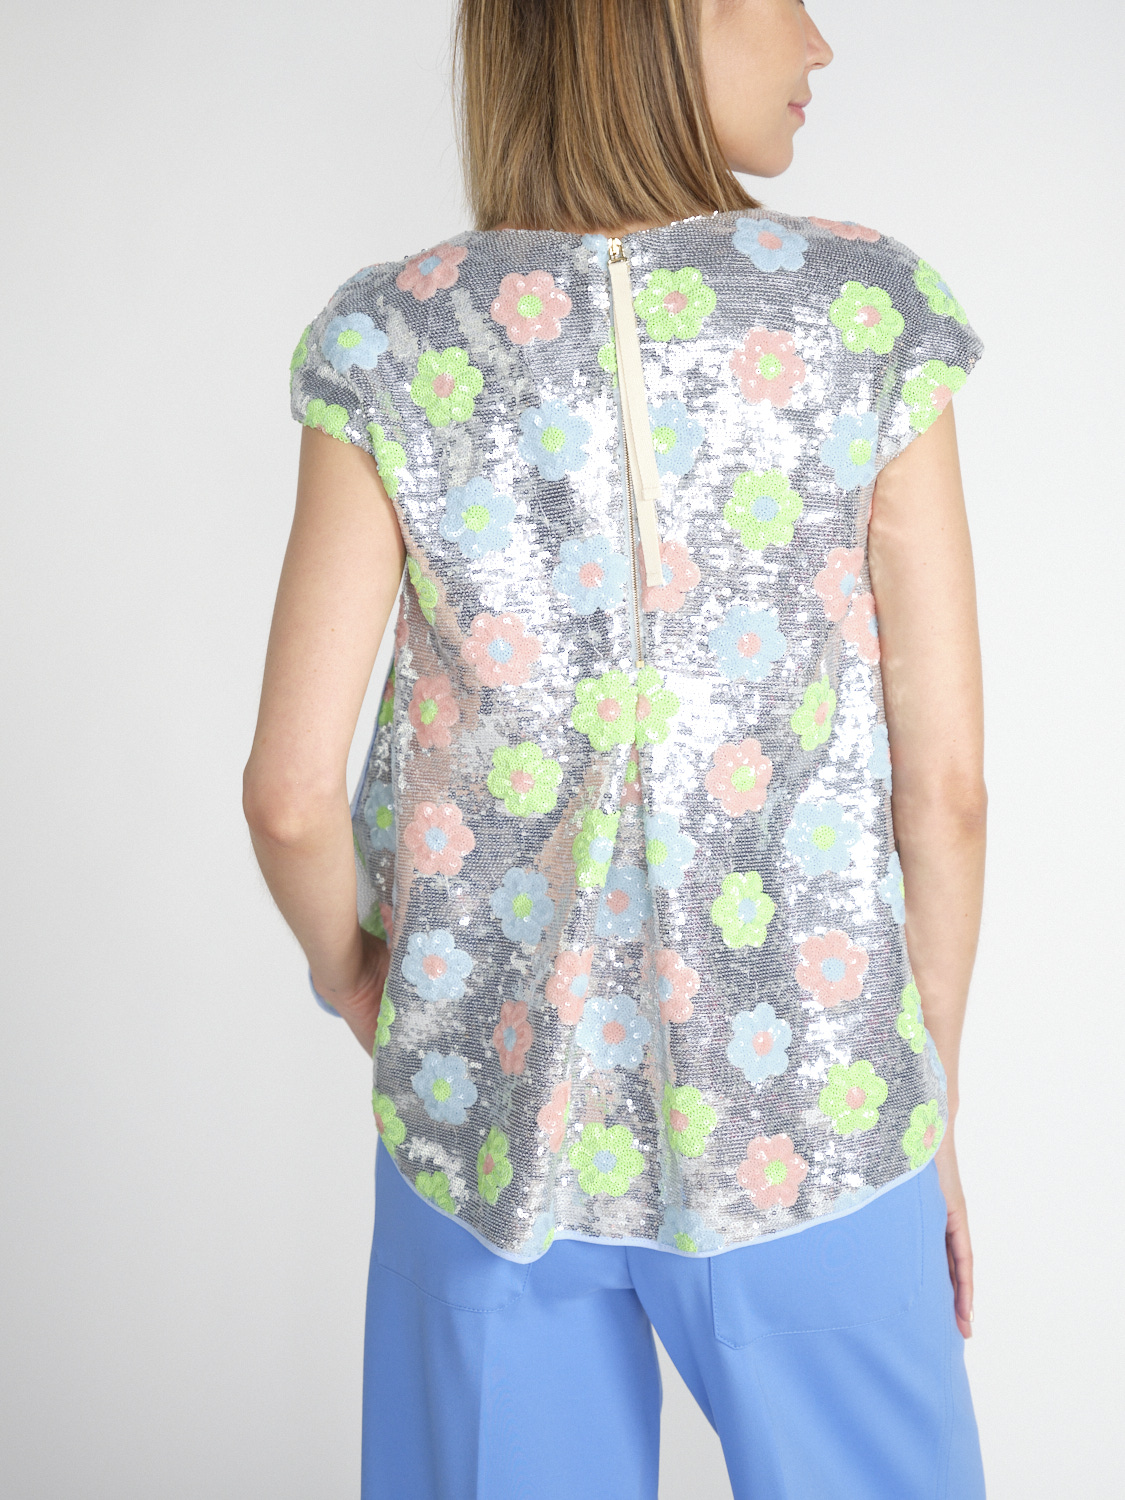 Odeeh Sequins Daisies - Blusa de lentejuelas con diseño floral   multicolor 34